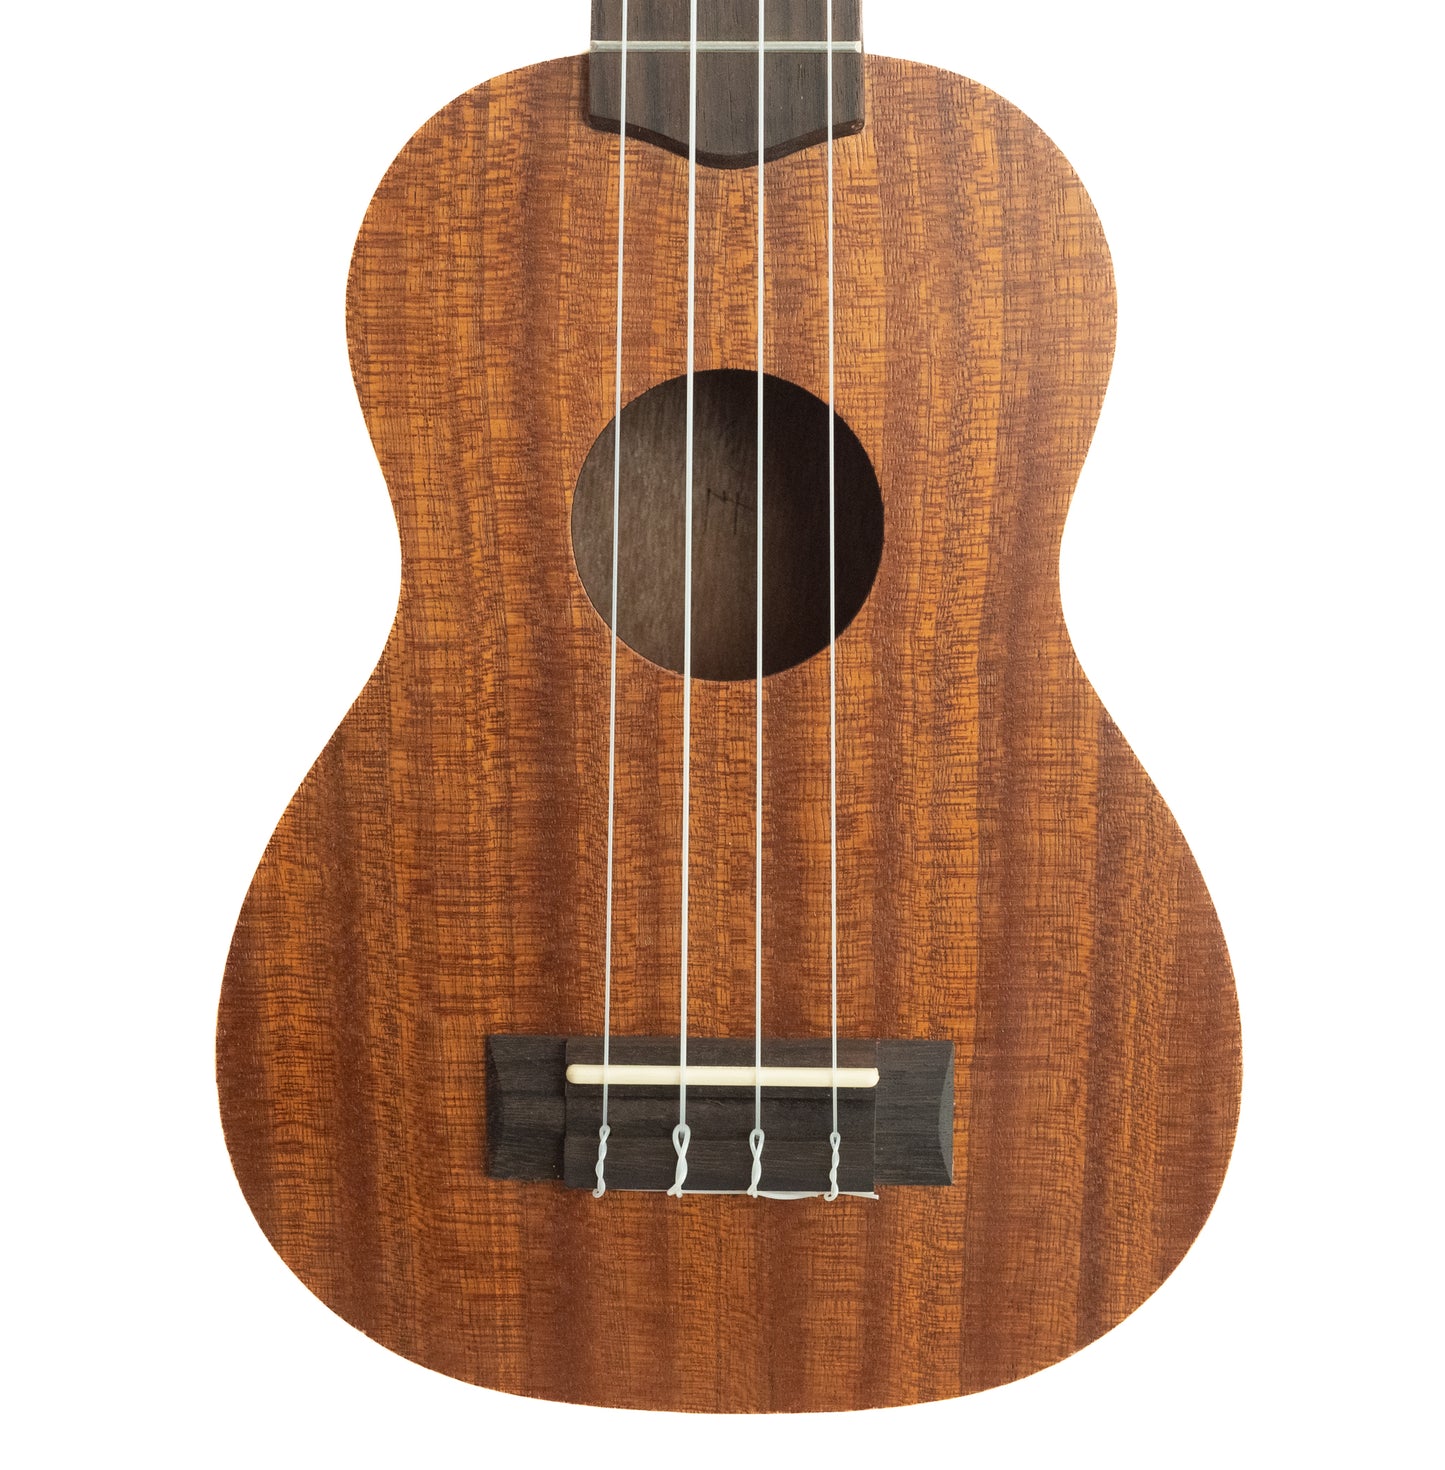 KALA KA-S Soprano ukulele